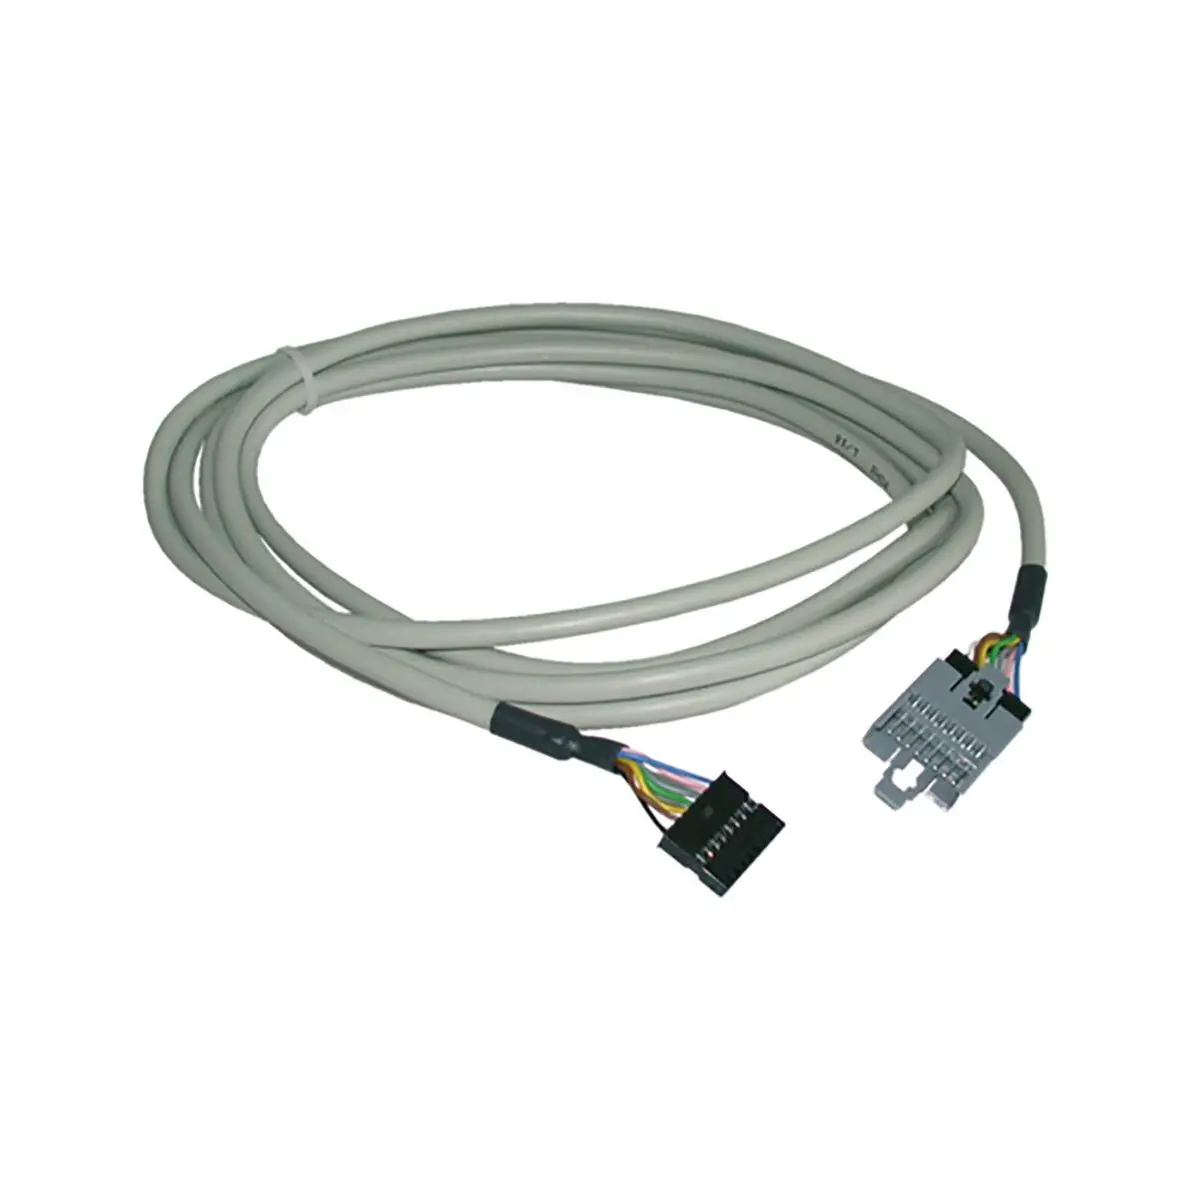 3 m-es hosszabbító kábel infravörös vevőkhöz Saphir compact, Saphir Comfort RC és Saphir vario klímarendszerekhez